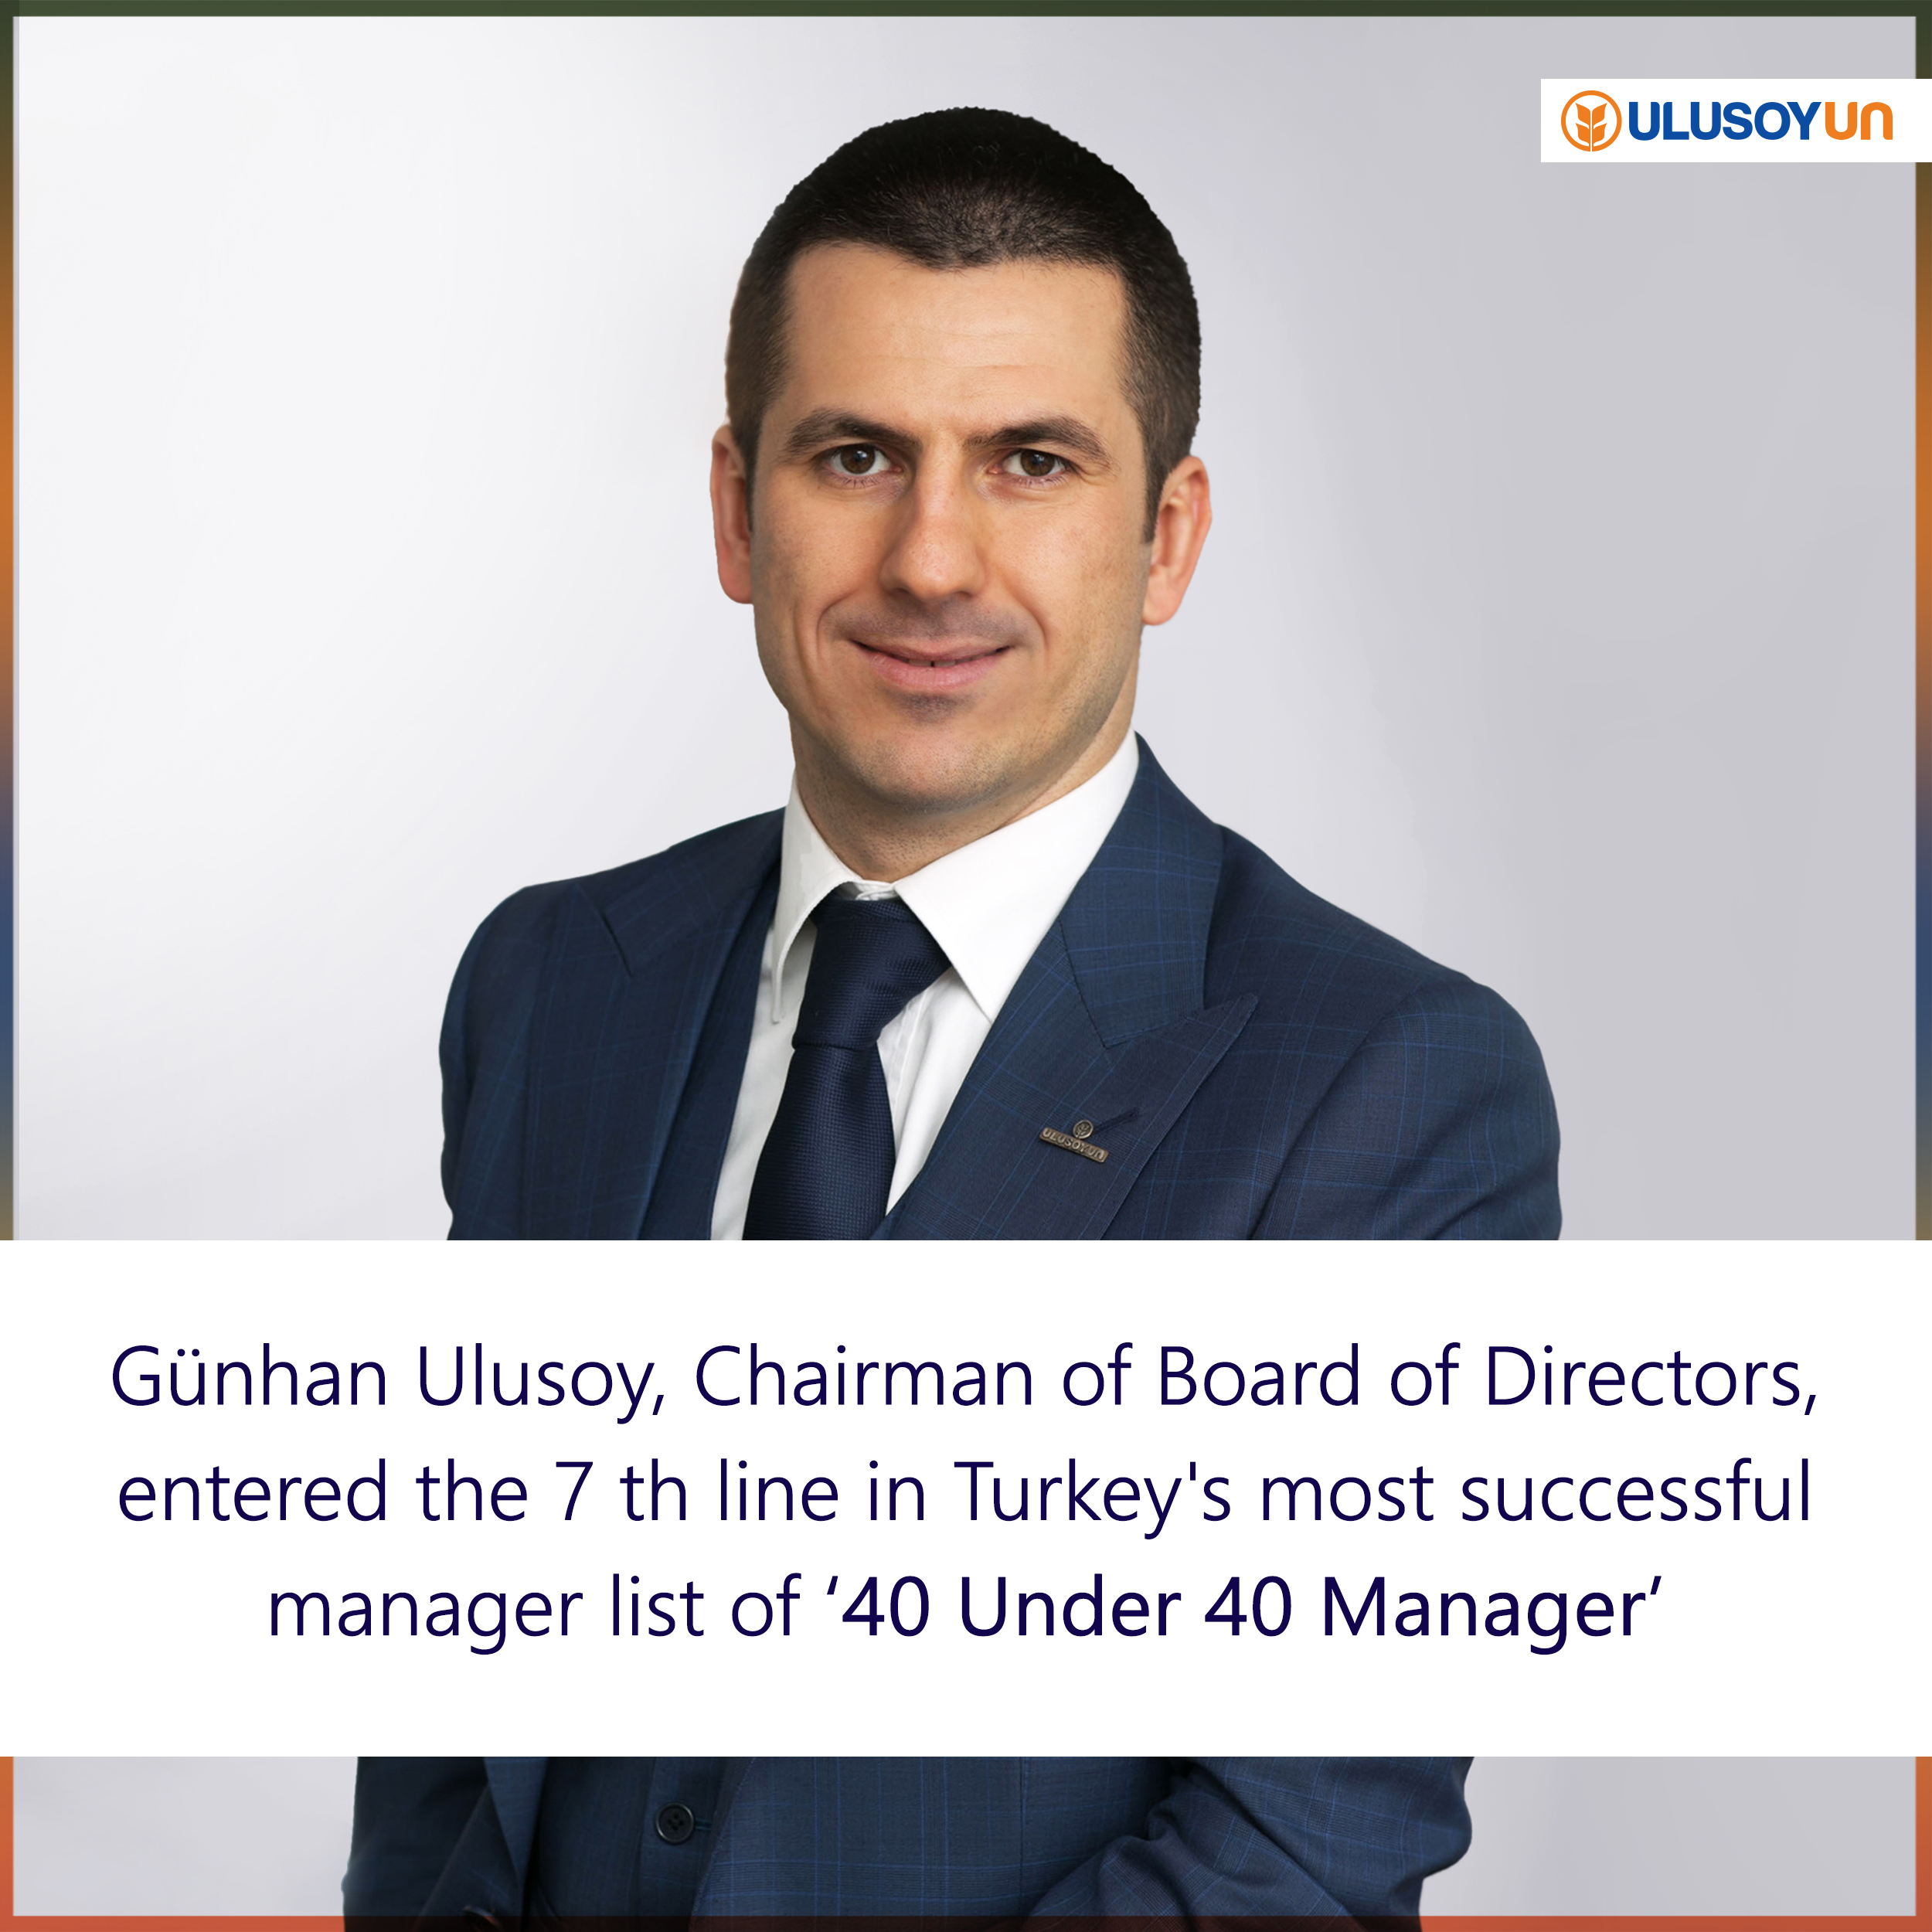 Gunhan Ulusoy, Fortune, Turkey